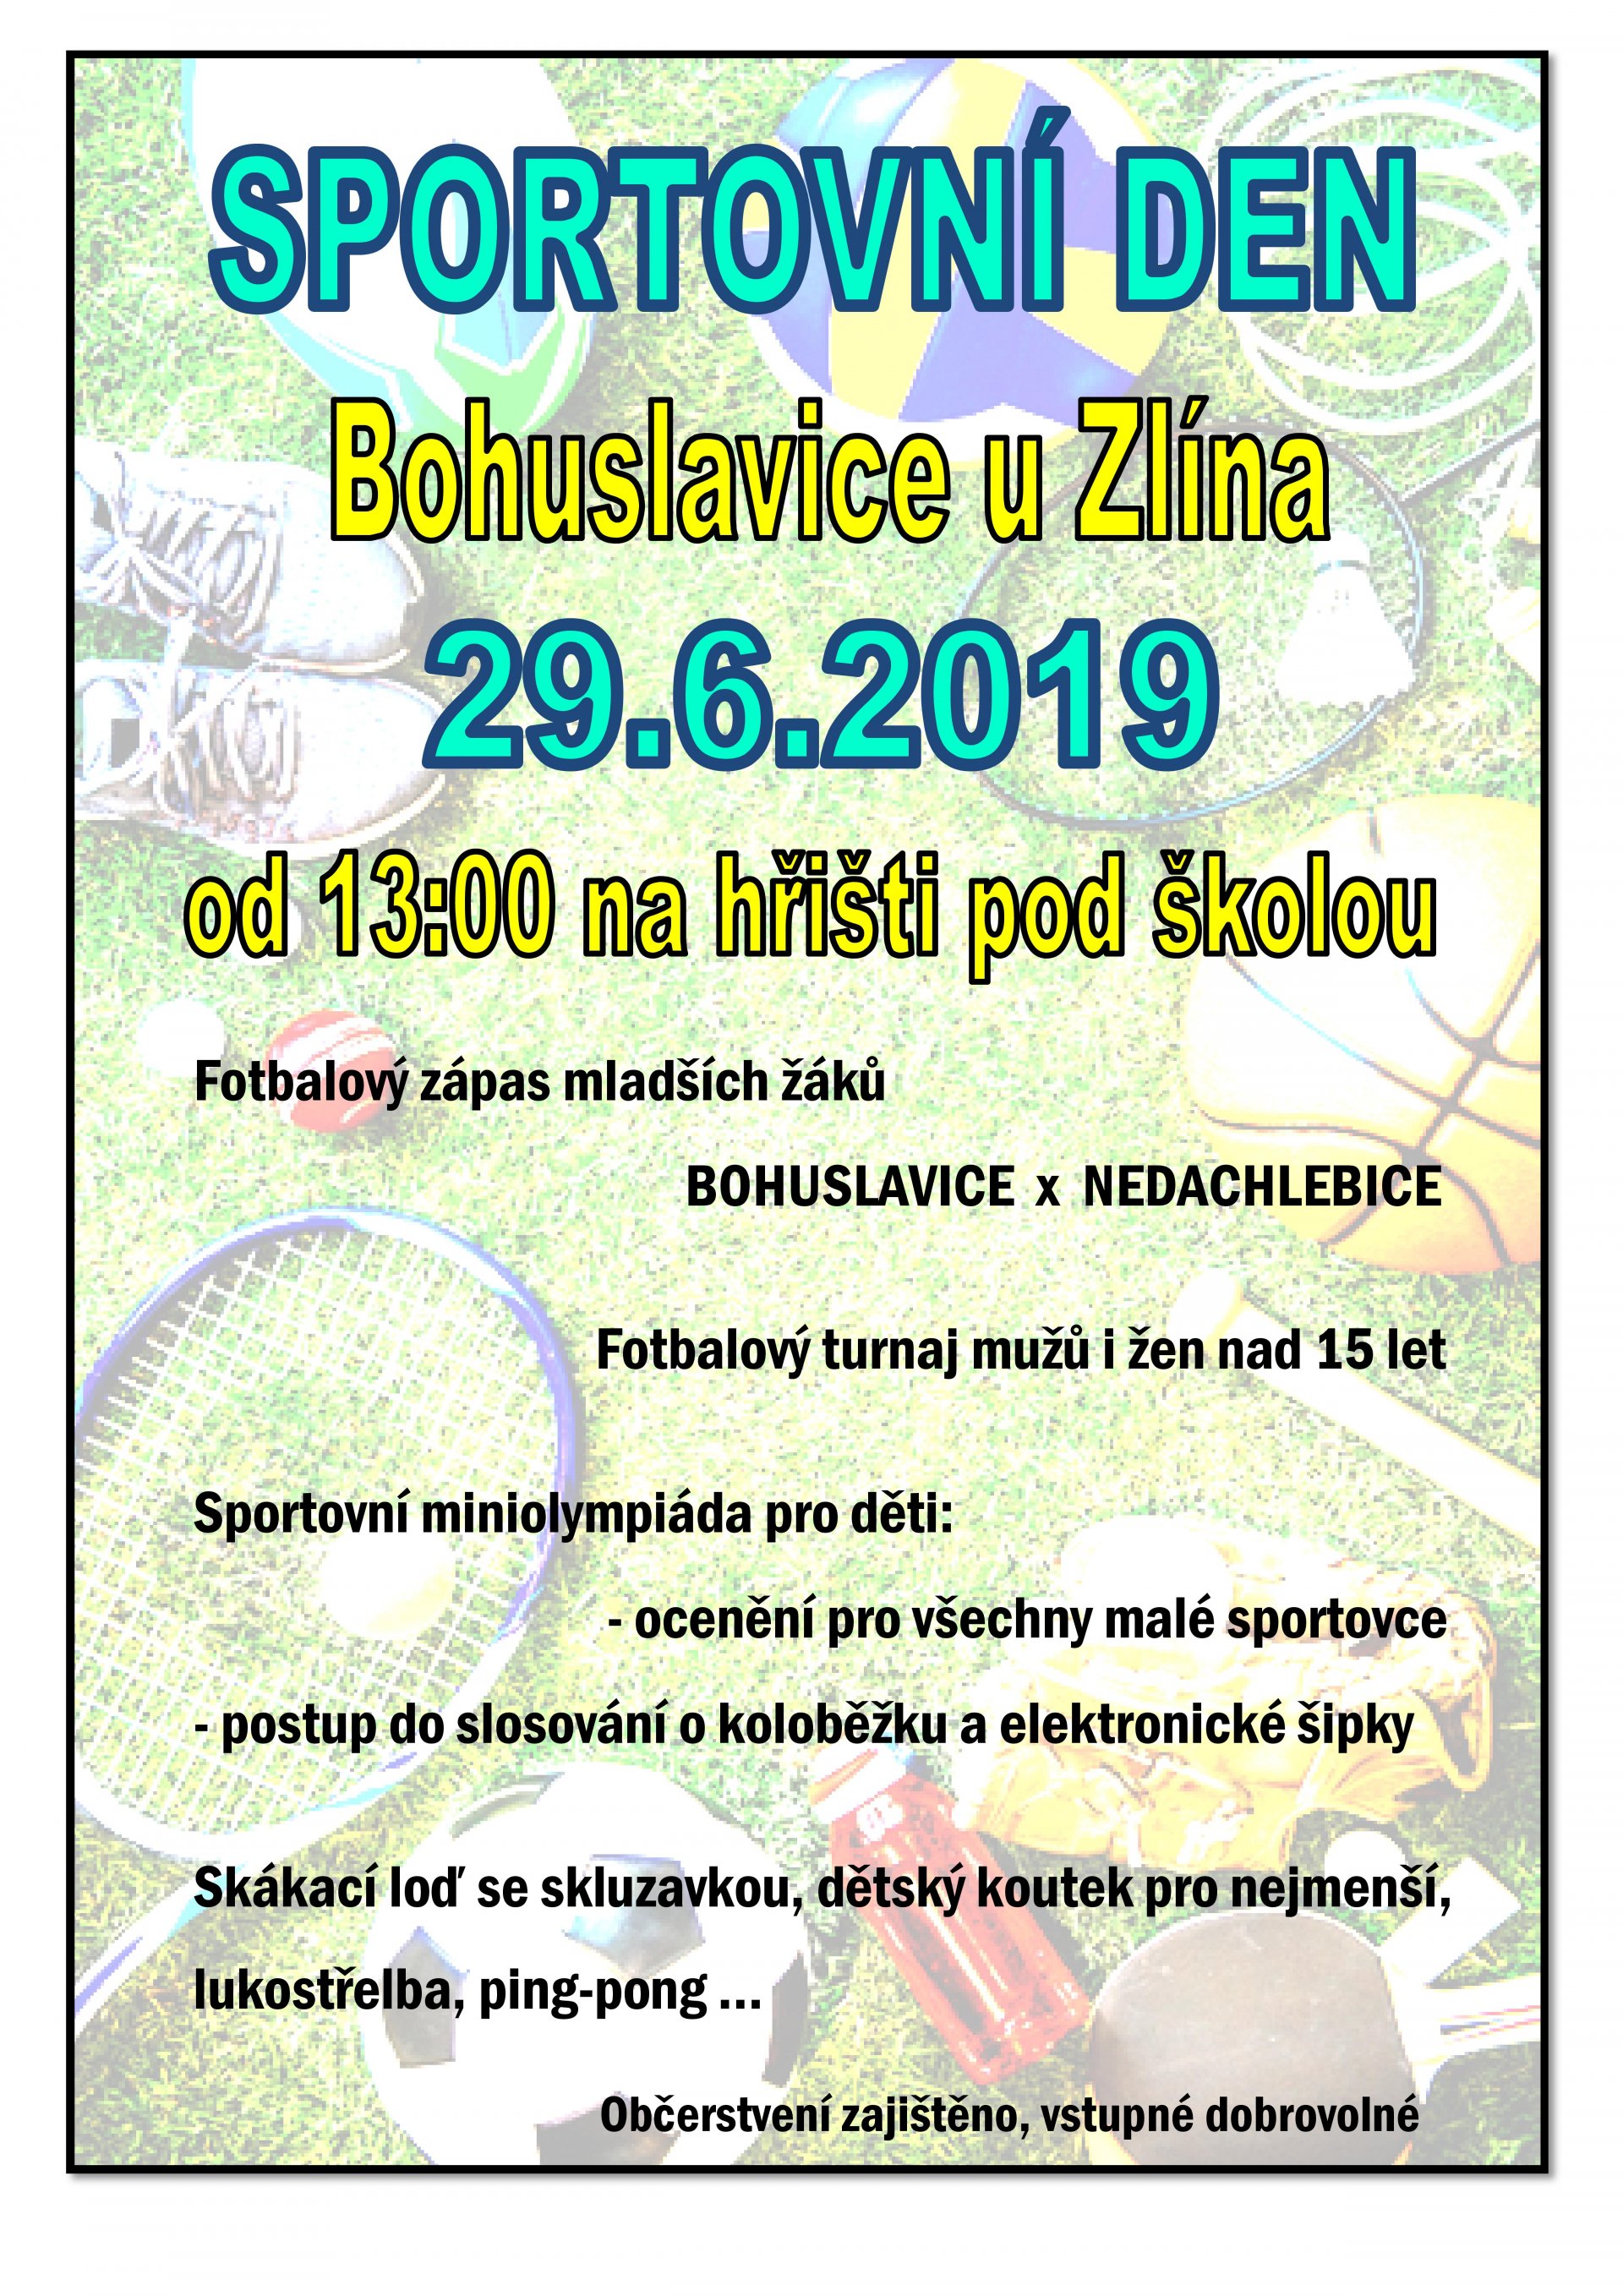 Sportovní den v Bohuslavicích